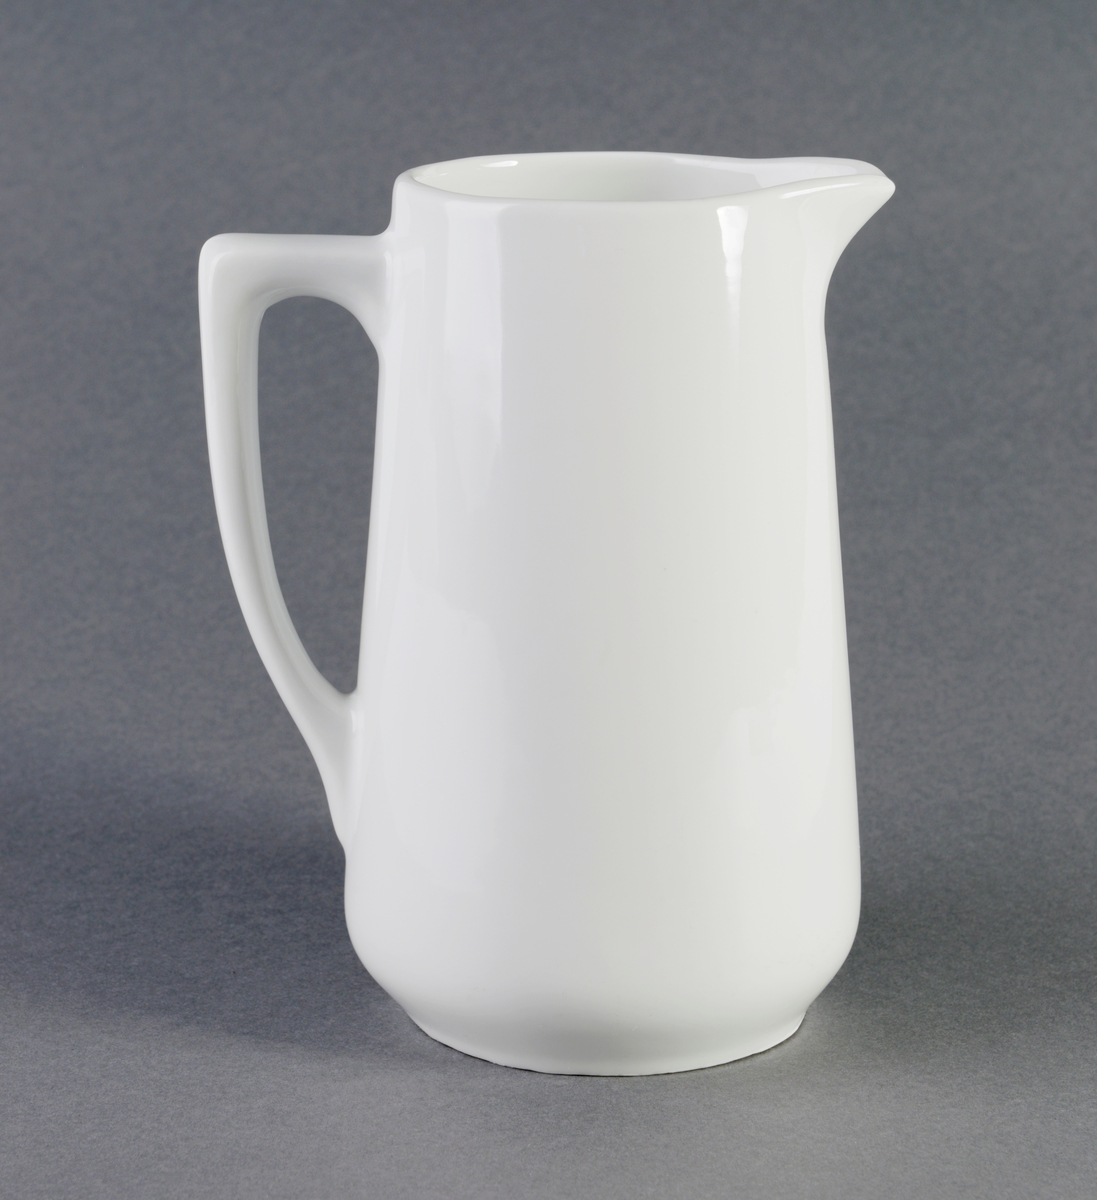 Konisk formet melkemugge av porselen med hank og glasur. Kan også ha blitt brukt som vannmugge.